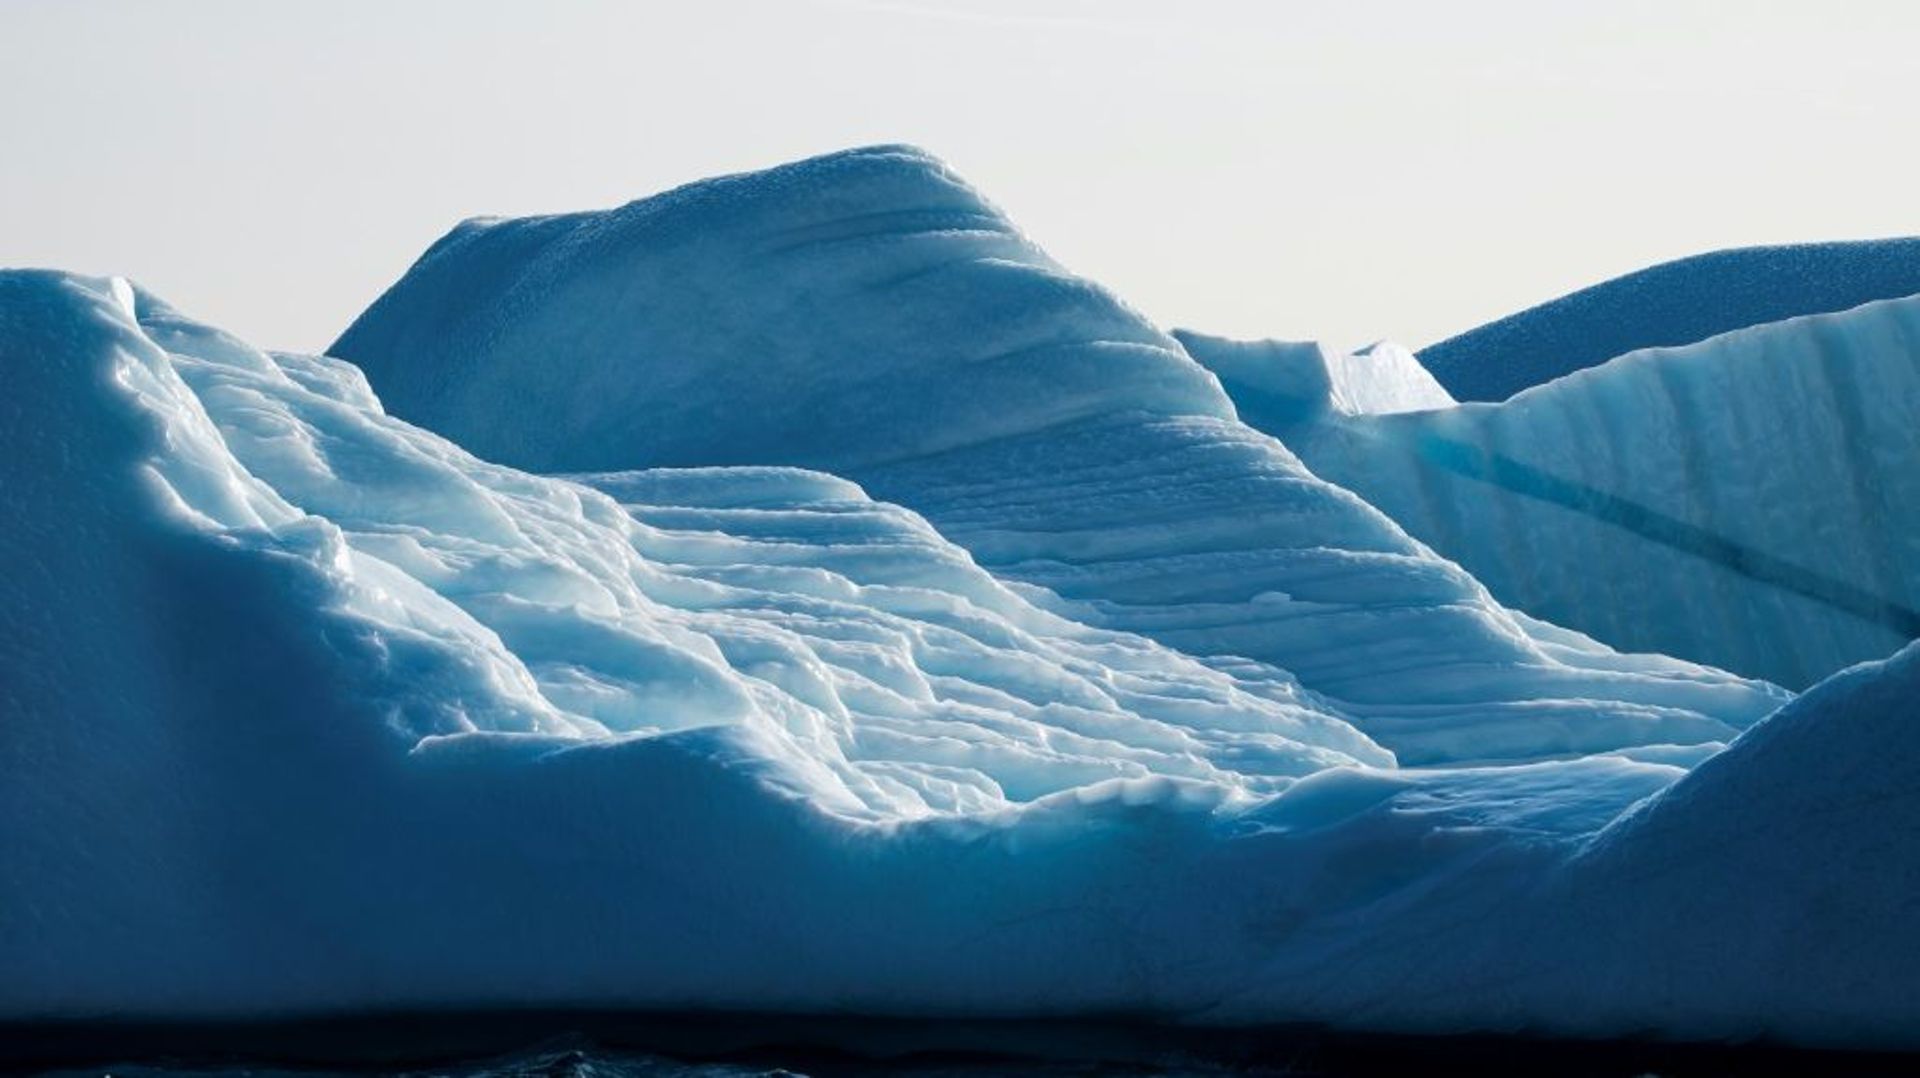 Nouveau record de froid dans l'hémisphère nord: le 22 décembre 1991 une température de -69,6°C a été enregistrée au Groenland, a annoncé l'Institut météorologique danois, 28 ans après